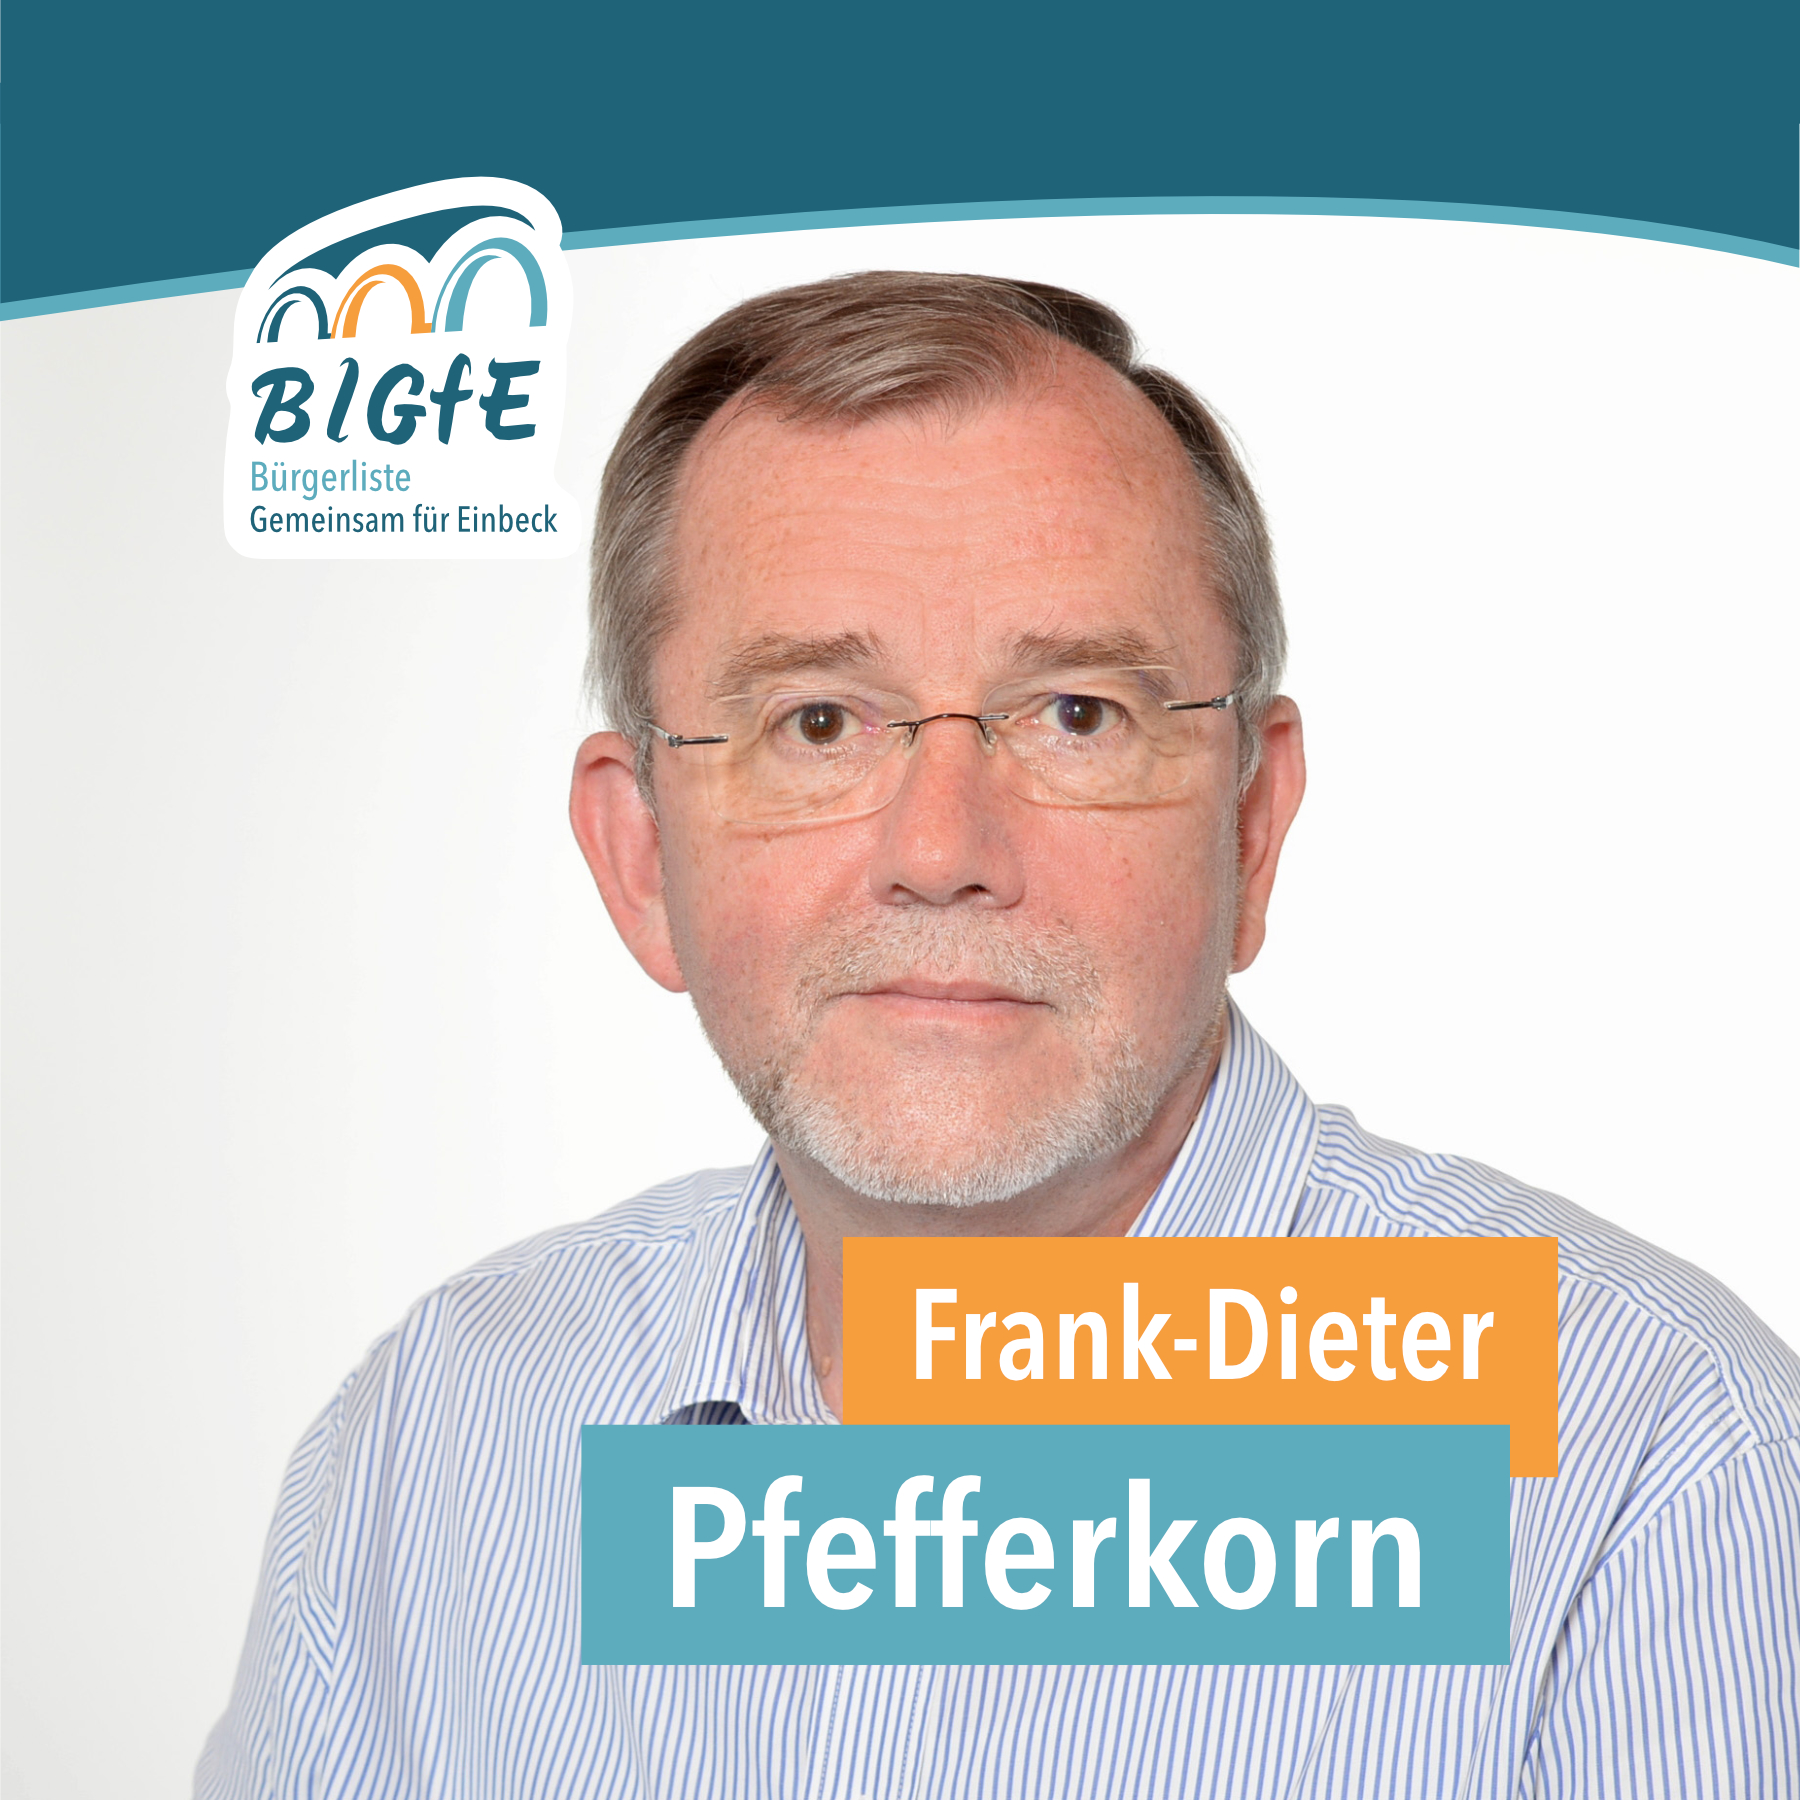 Frank-Dieter Pefferkorn